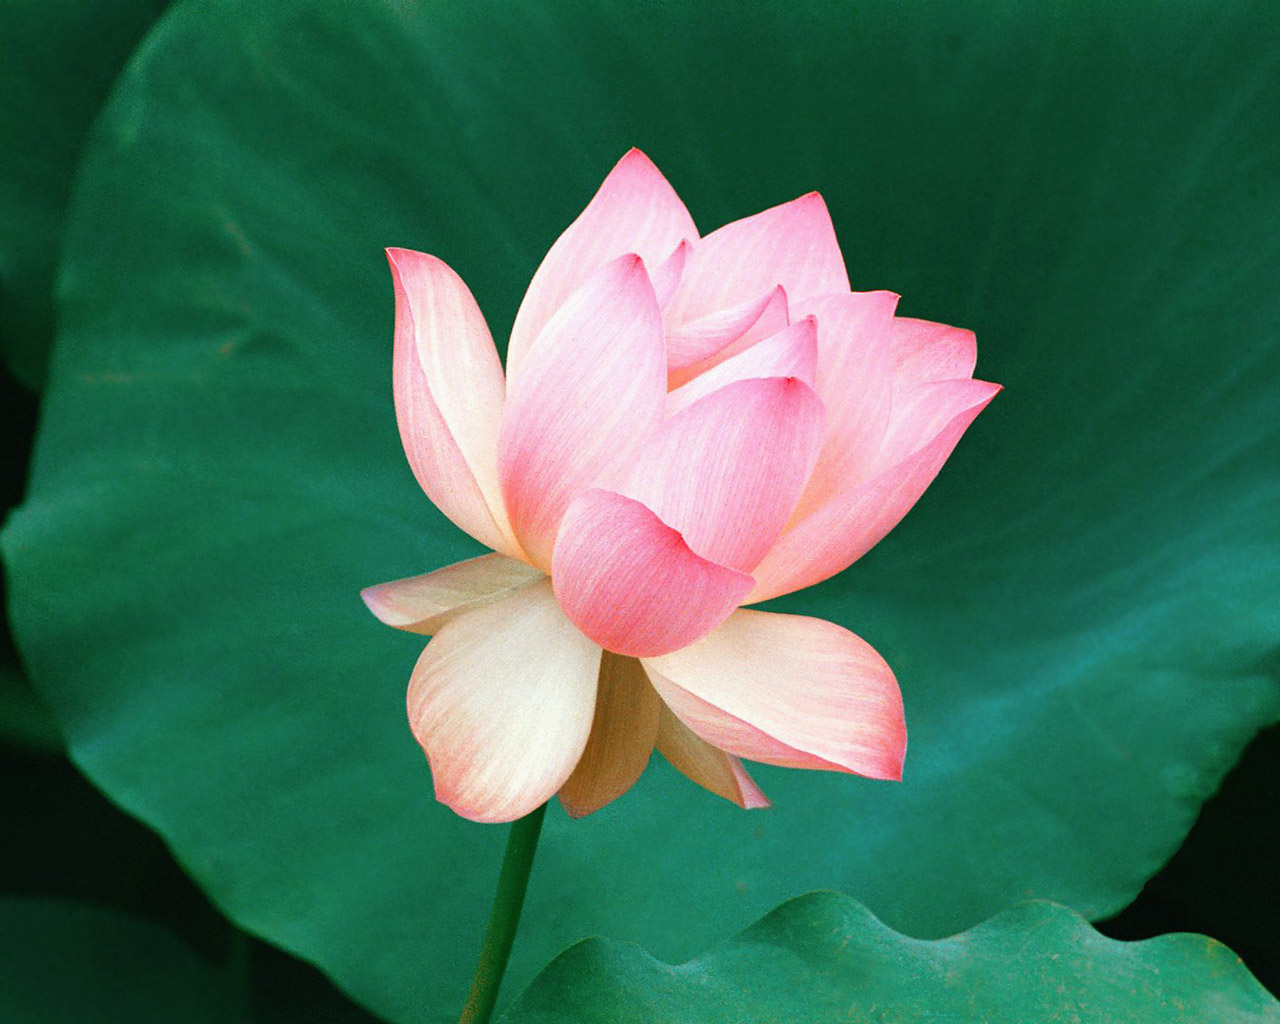 The_Lotus_Flower_Hawaii.jpg